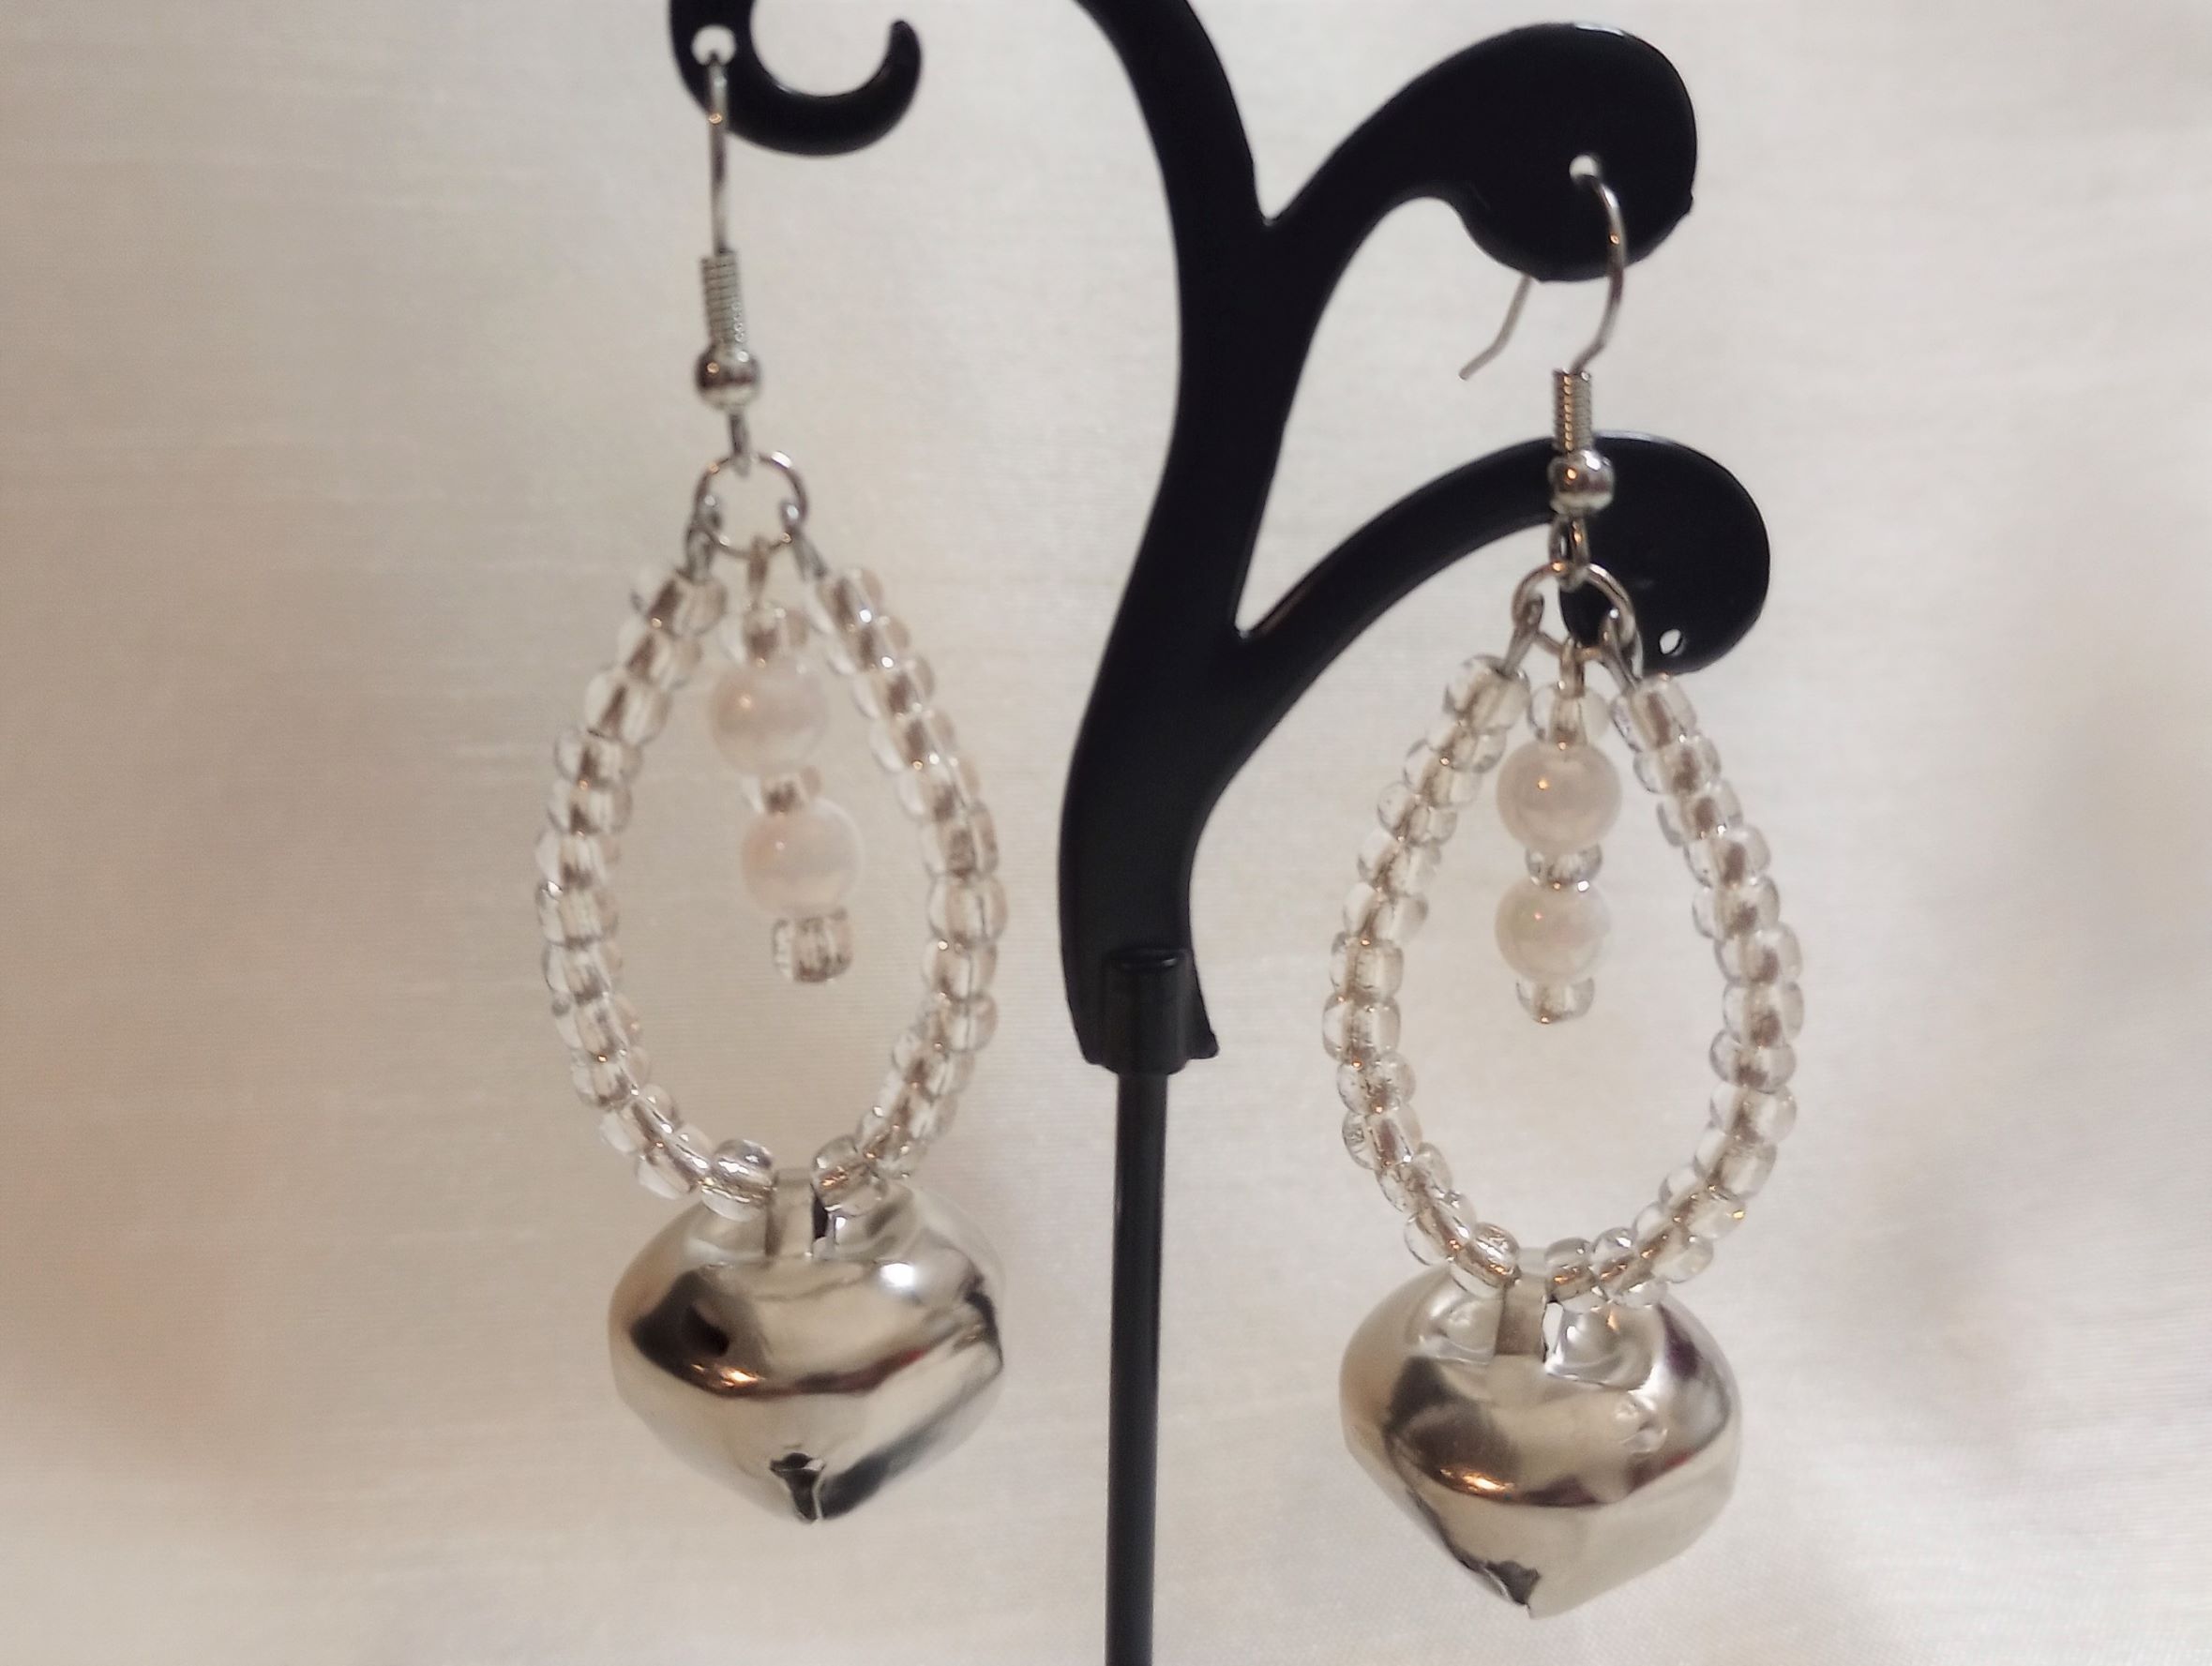 A – Silver Jingle Bell Earrings